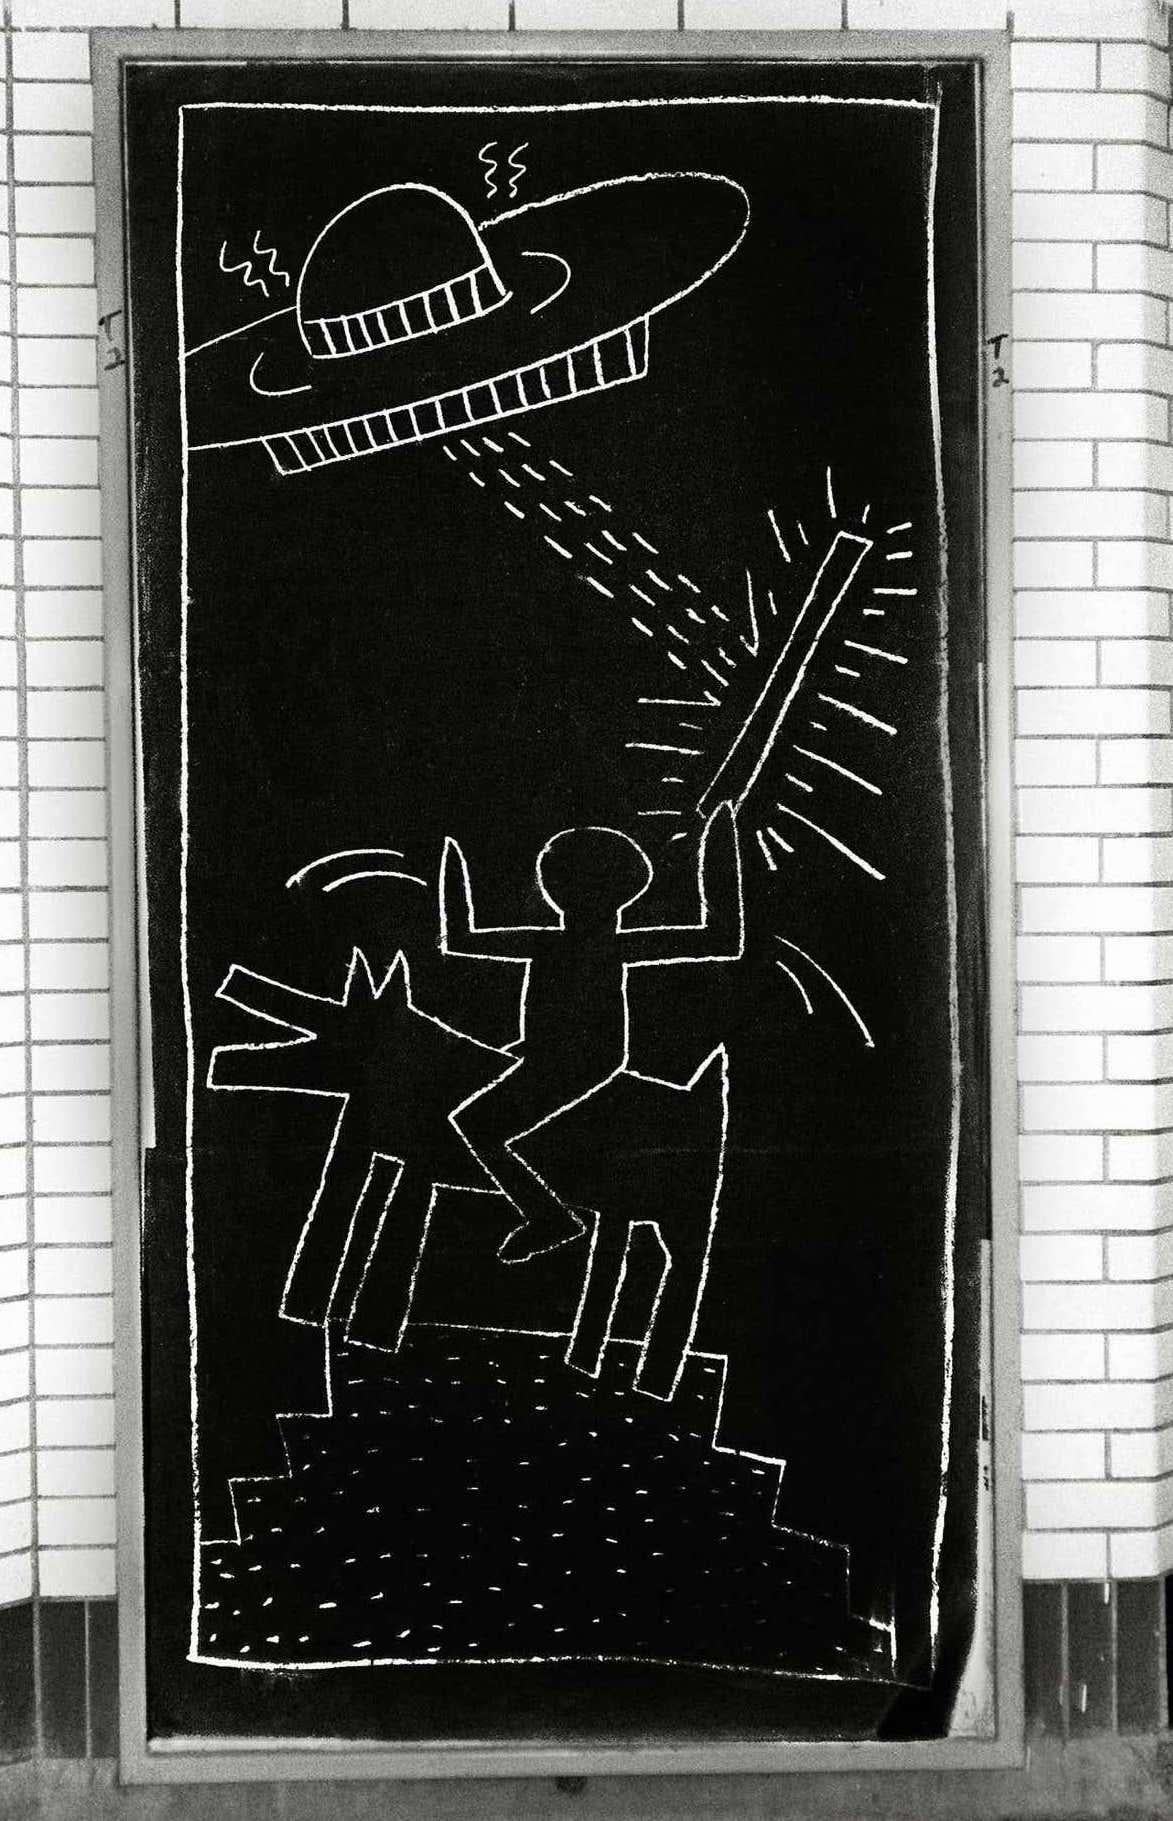 Keith Haring Subway Drawings Photographie :
Cette photographie illustre la conquête épique de Keith Haring, qui a réalisé des œuvres d'art public sur les quais du métro de New York, au début des années 80. Haring voulait que ces dessins soient des